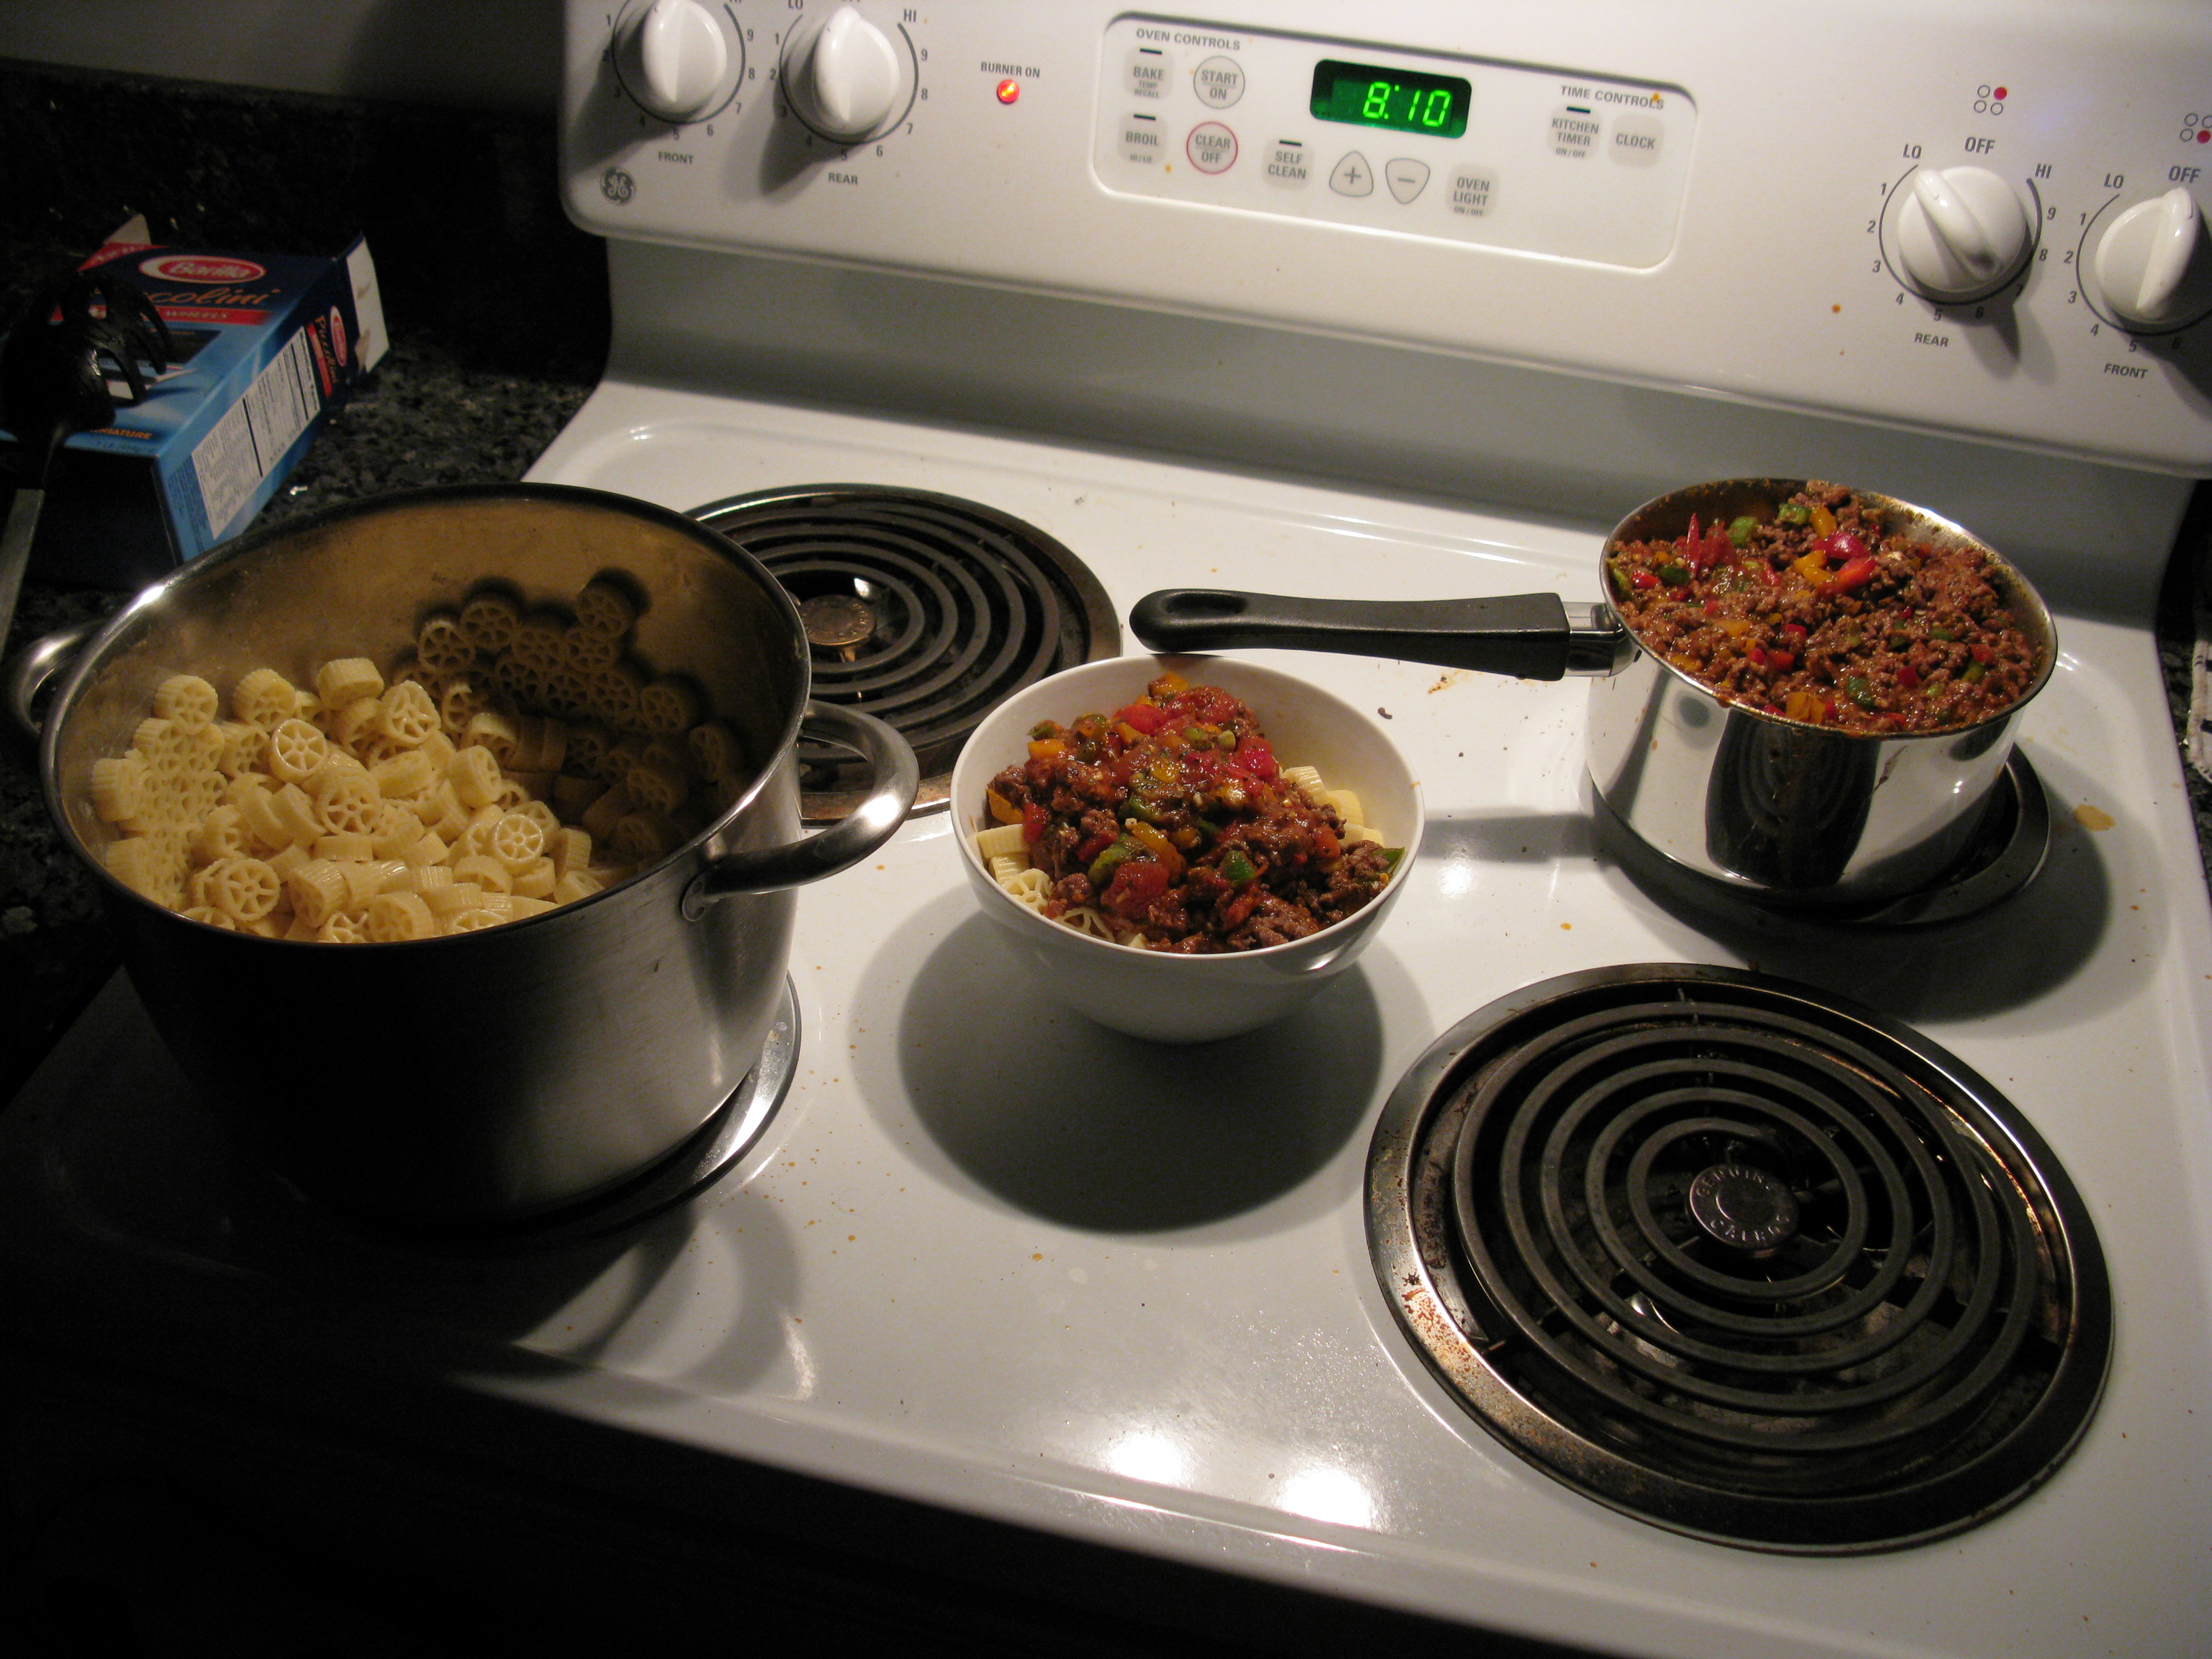 2008 04 23 - Laurel - Pasta, sauce & beef (completed)